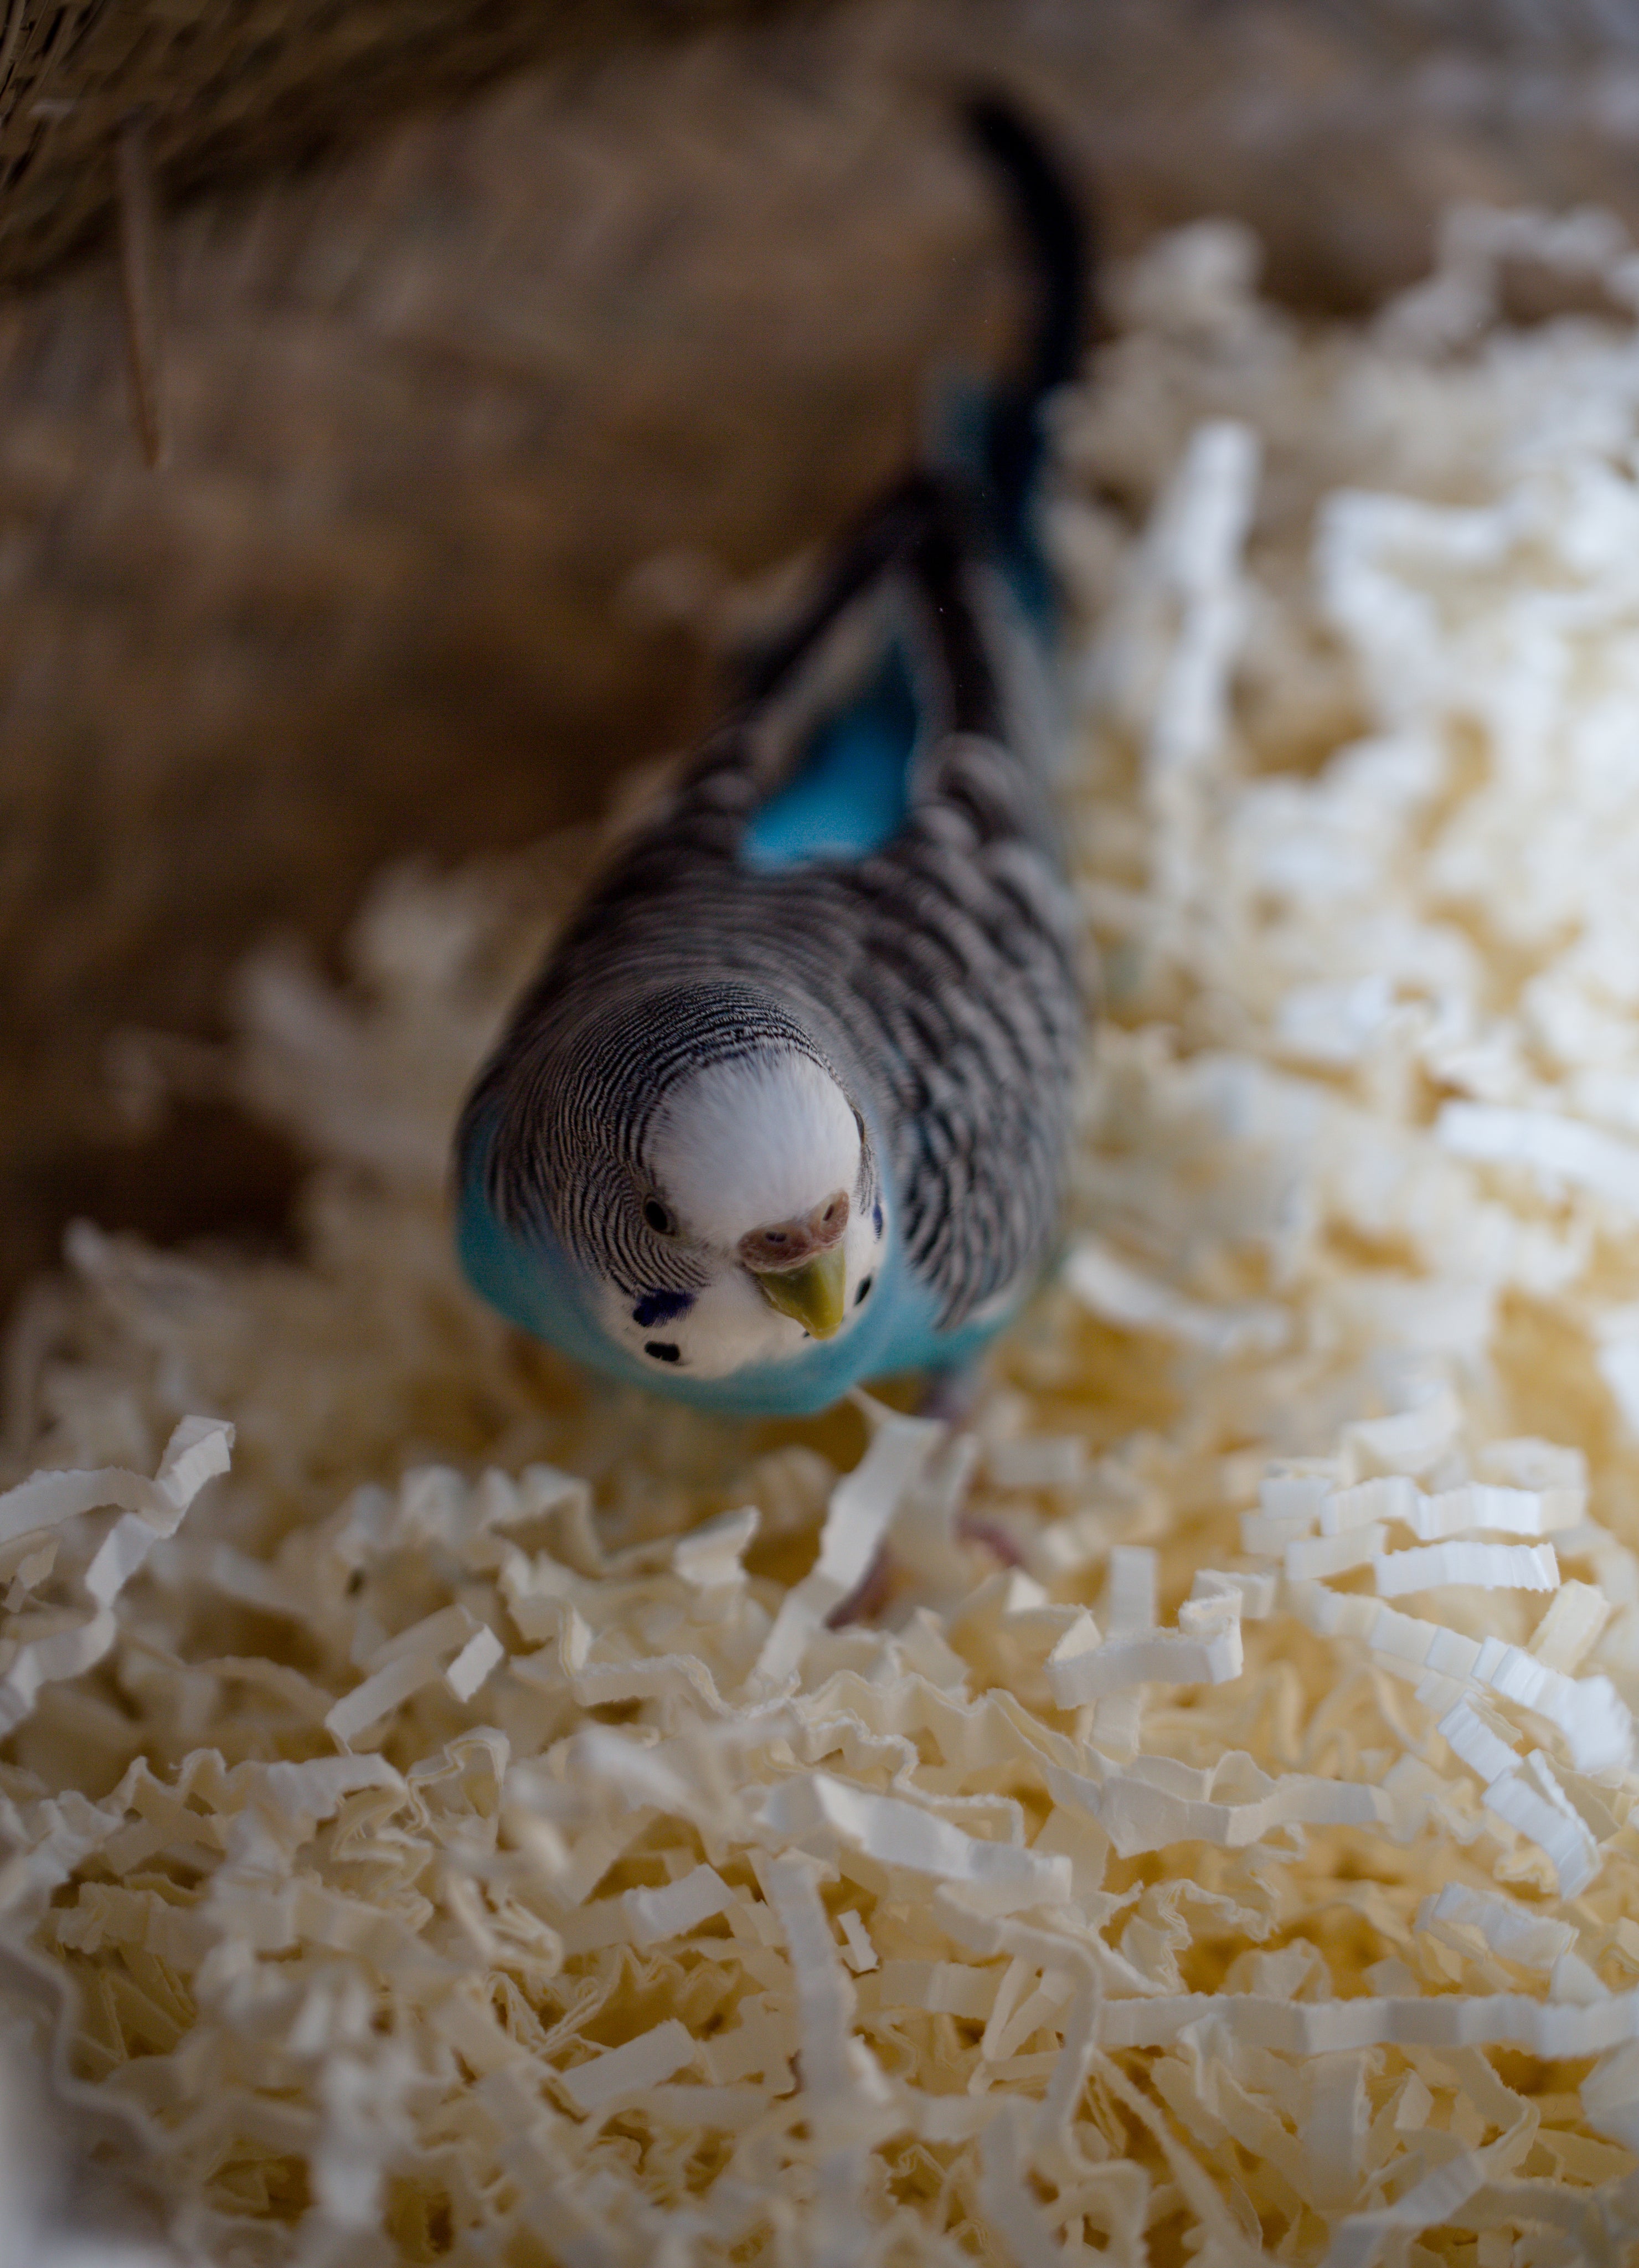 A parakeet in a basket